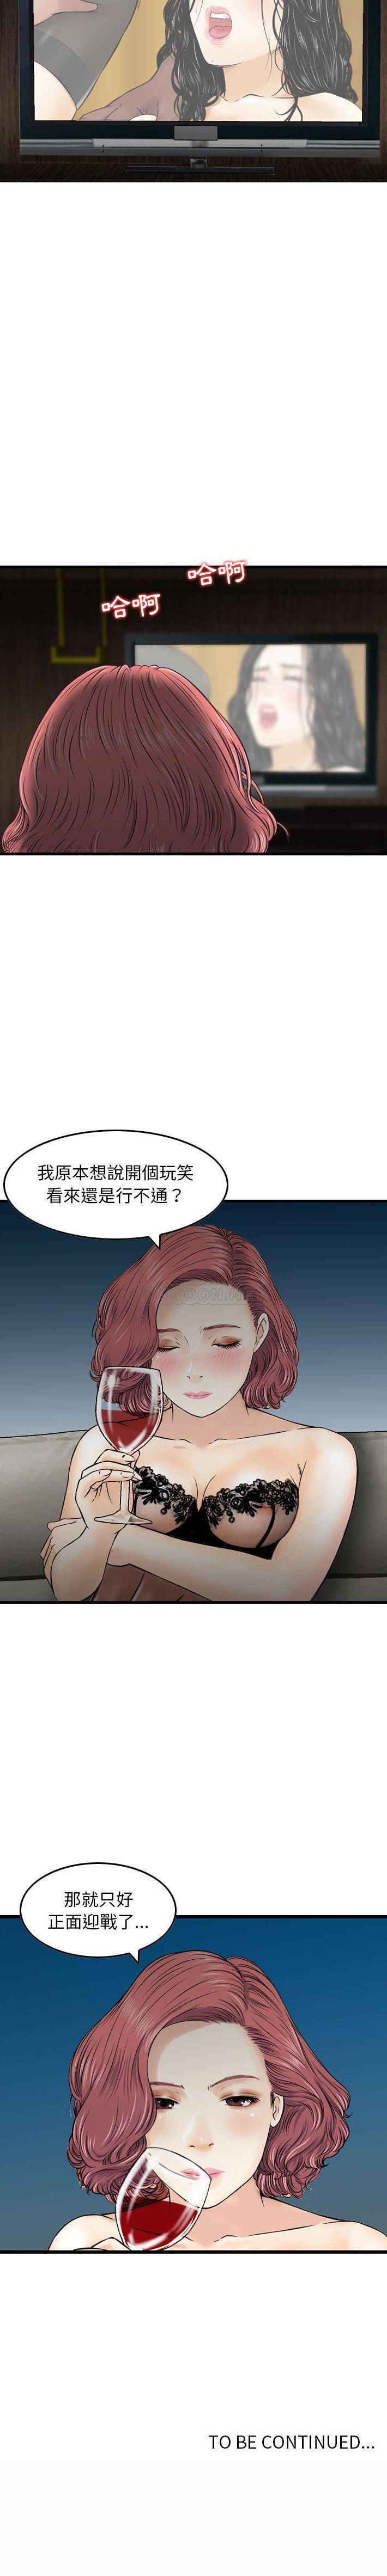 韩国污漫画 金錢的魅力 第15话 16